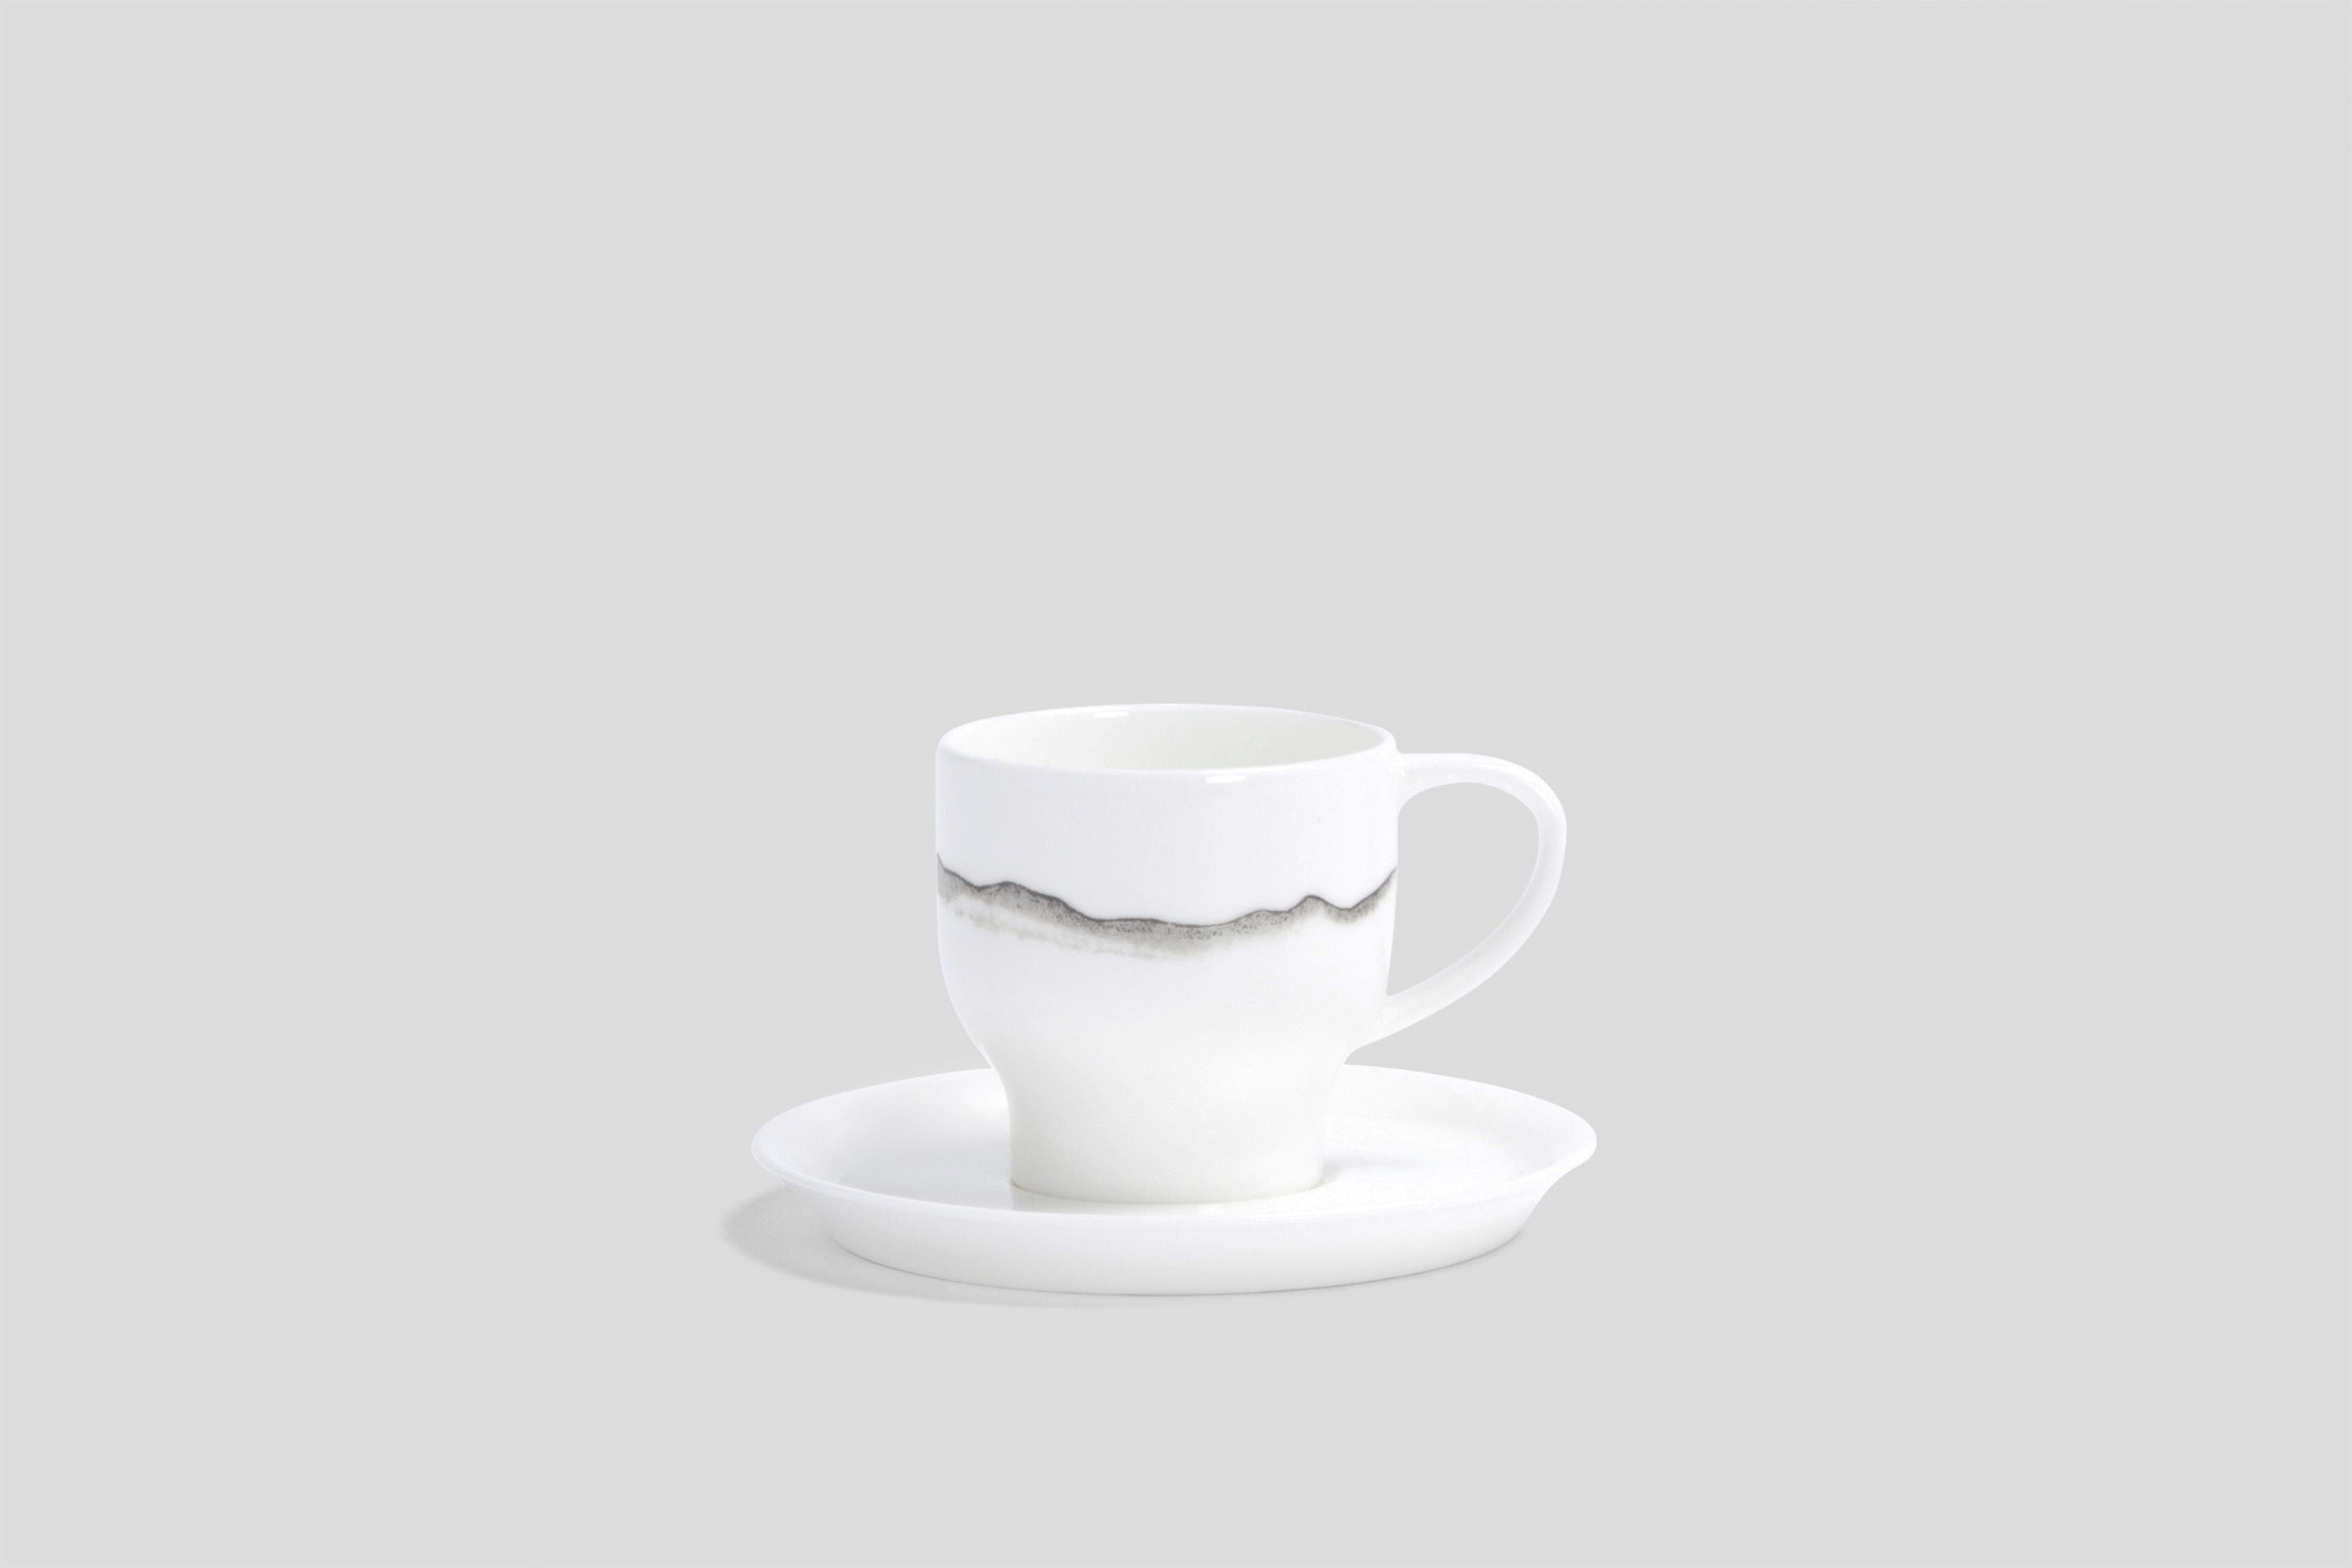 Designer-Luxury-Modern-Nikko Landscape Espresso Cup & Saucer-Nikko-Landscape-Bodo Sperlein-Bone China-Designer-Luxury-Modern-Tasse-Becher-Kaffee Tasse